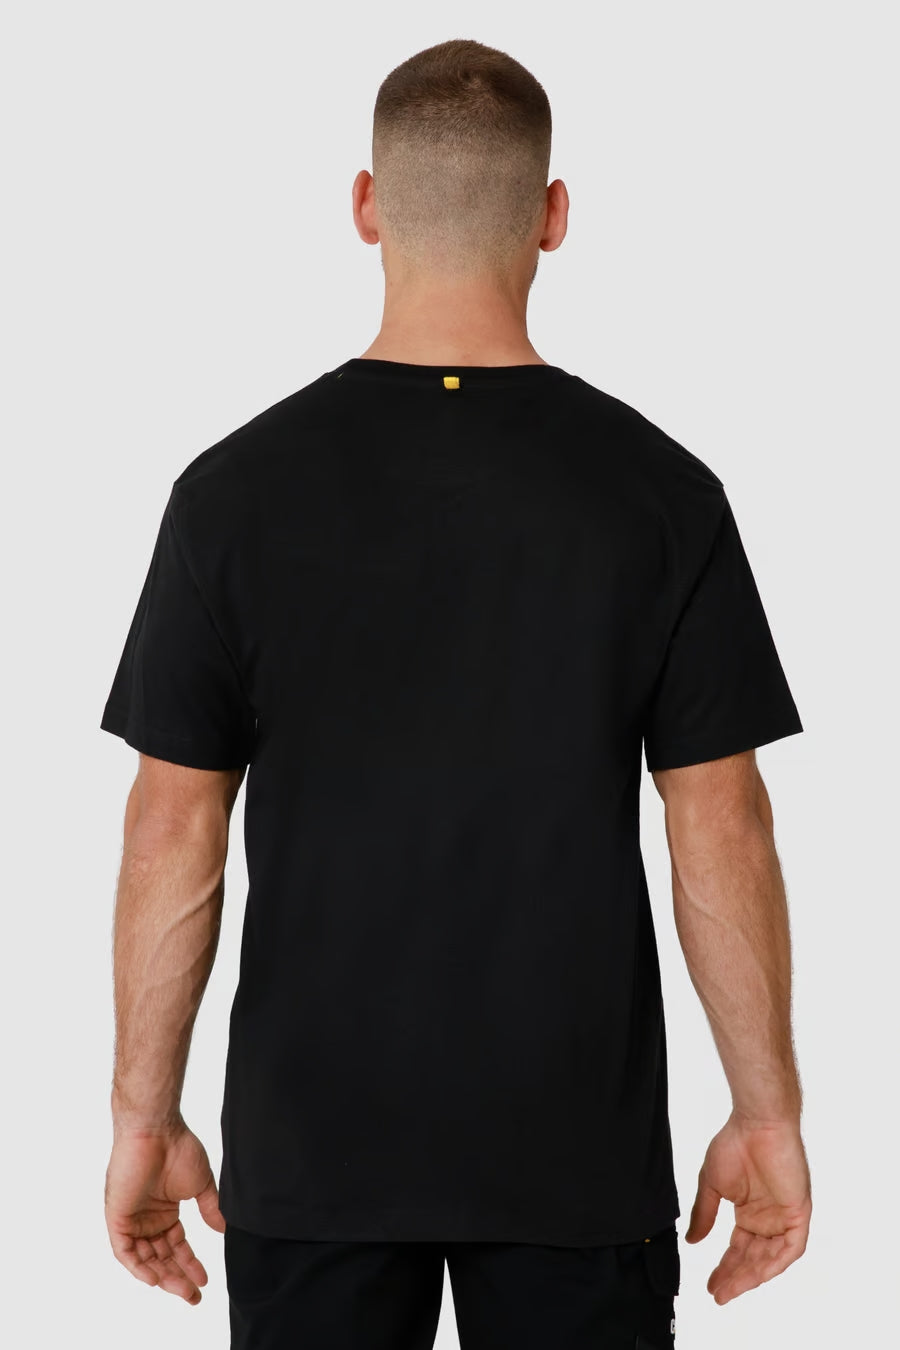 T-Shirt Trademark - Caterpillar